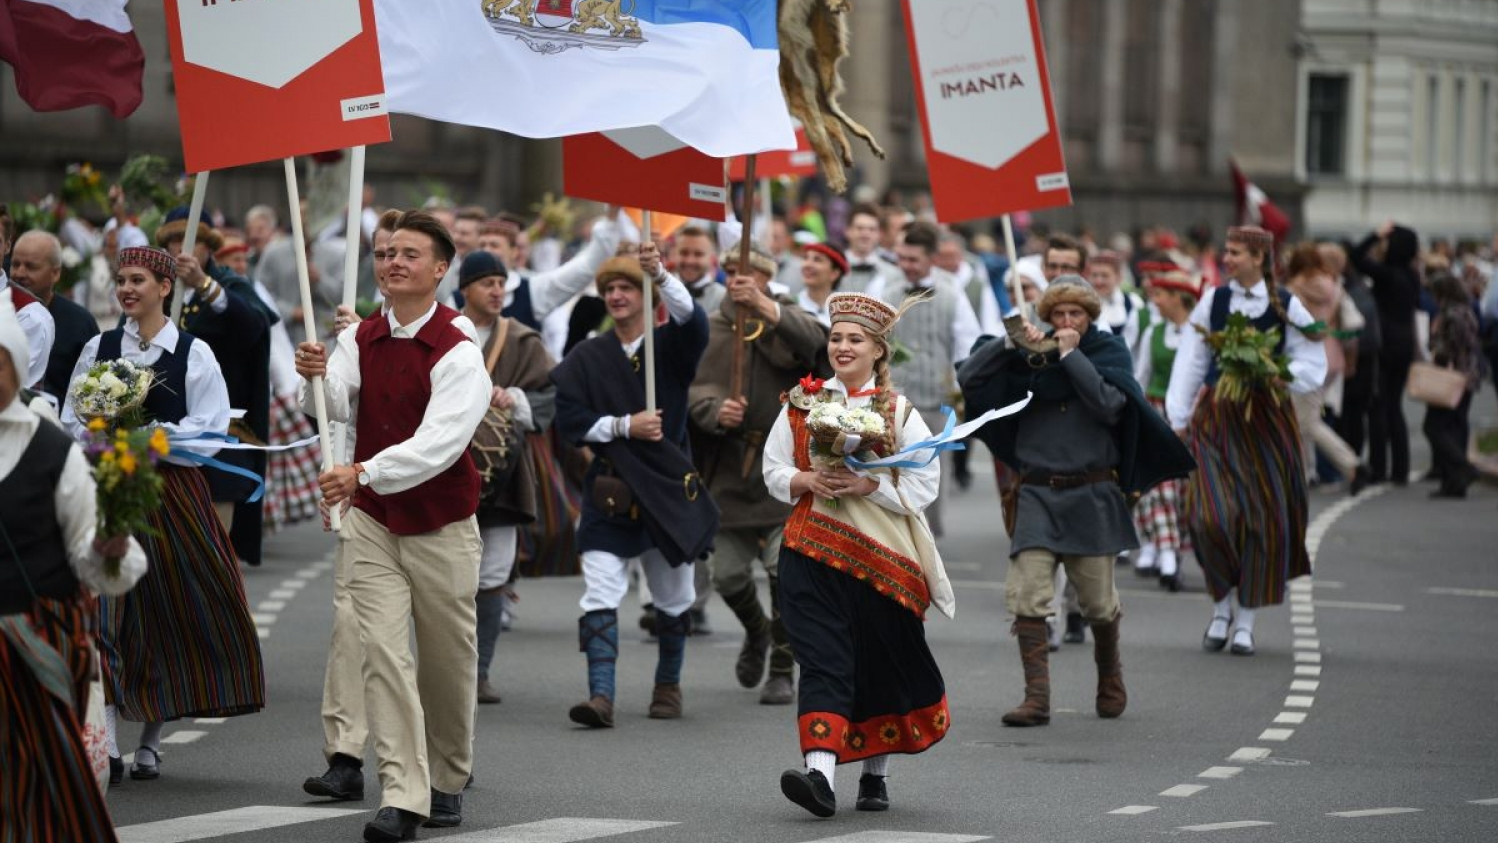 Rīgas pašvaldība aktīvi līdzdarbojas Dziesmu un deju svētku rīkošanā